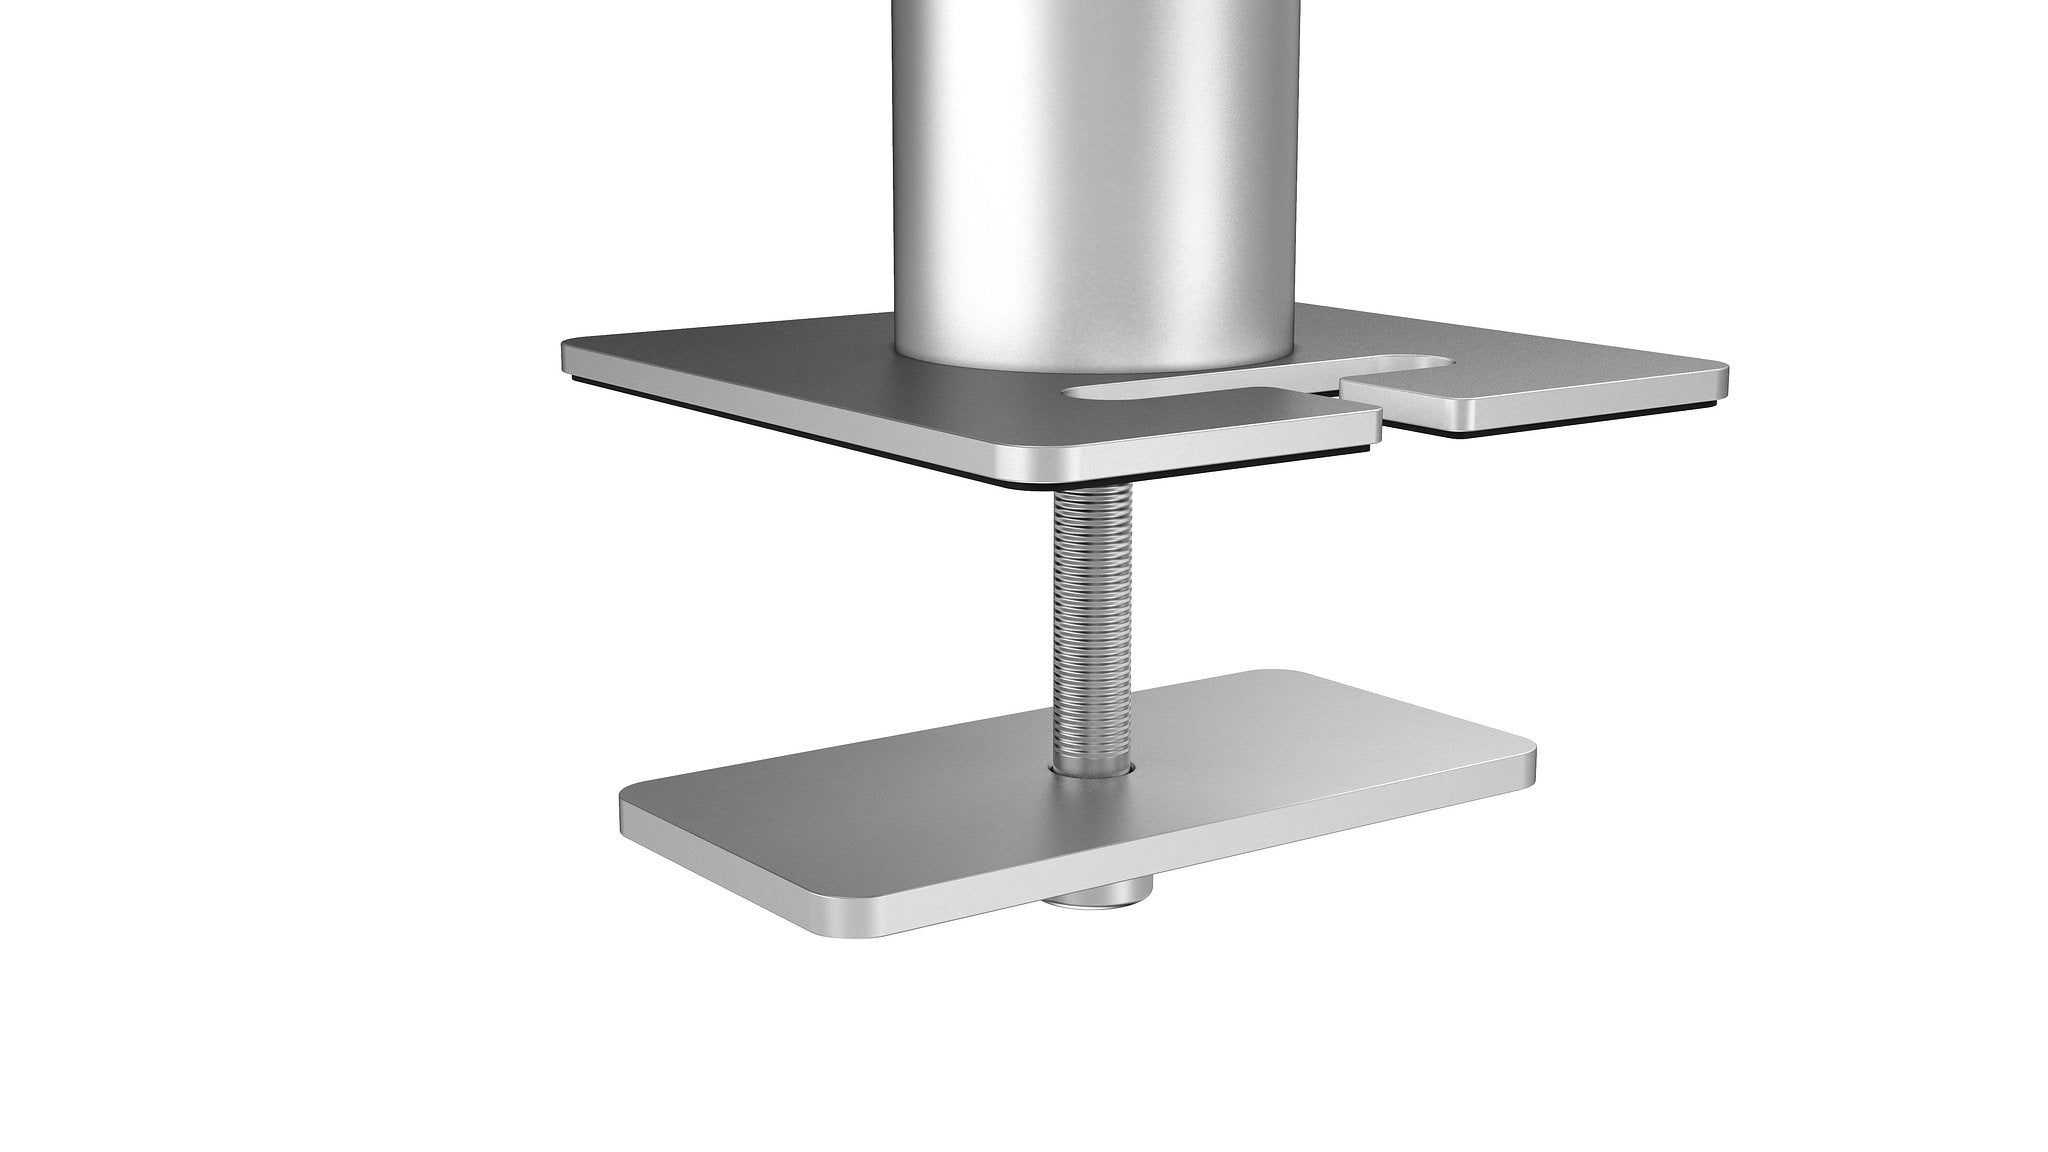 Durable monitor tafelbeugel - Zilver - 2 schermen - Bevestigingsschroef